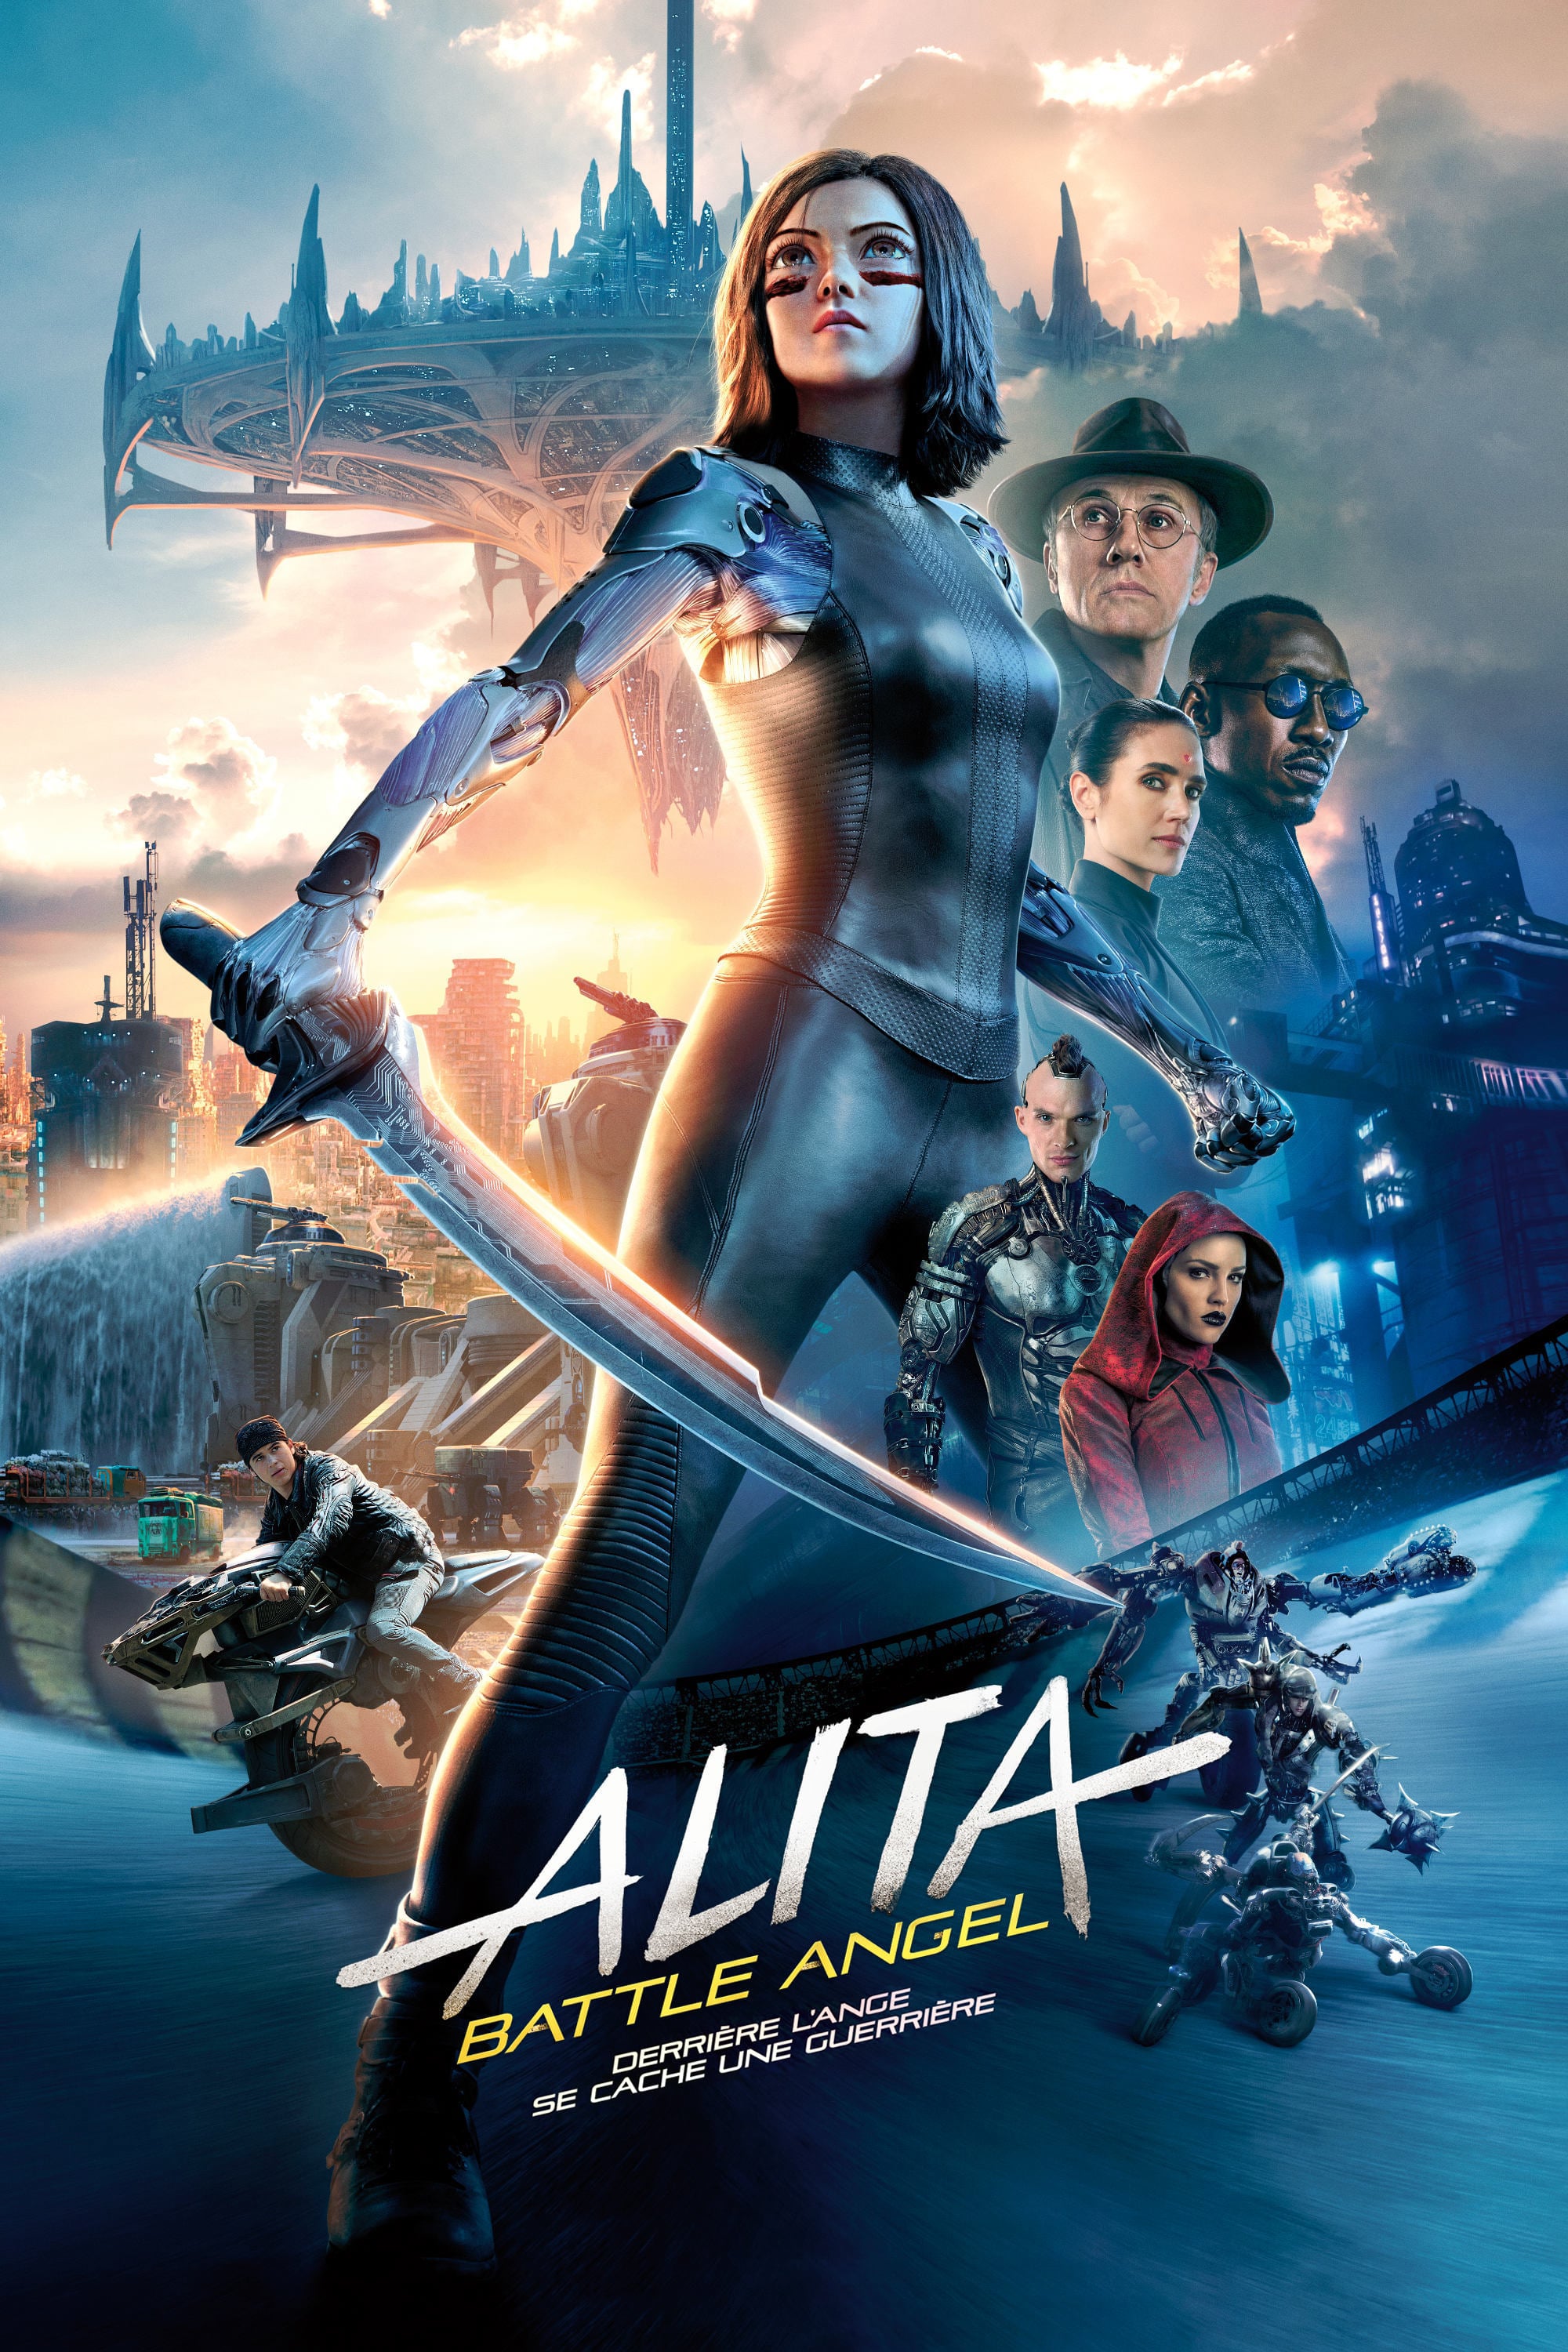 Affiche du film "Alita Battle Angel"